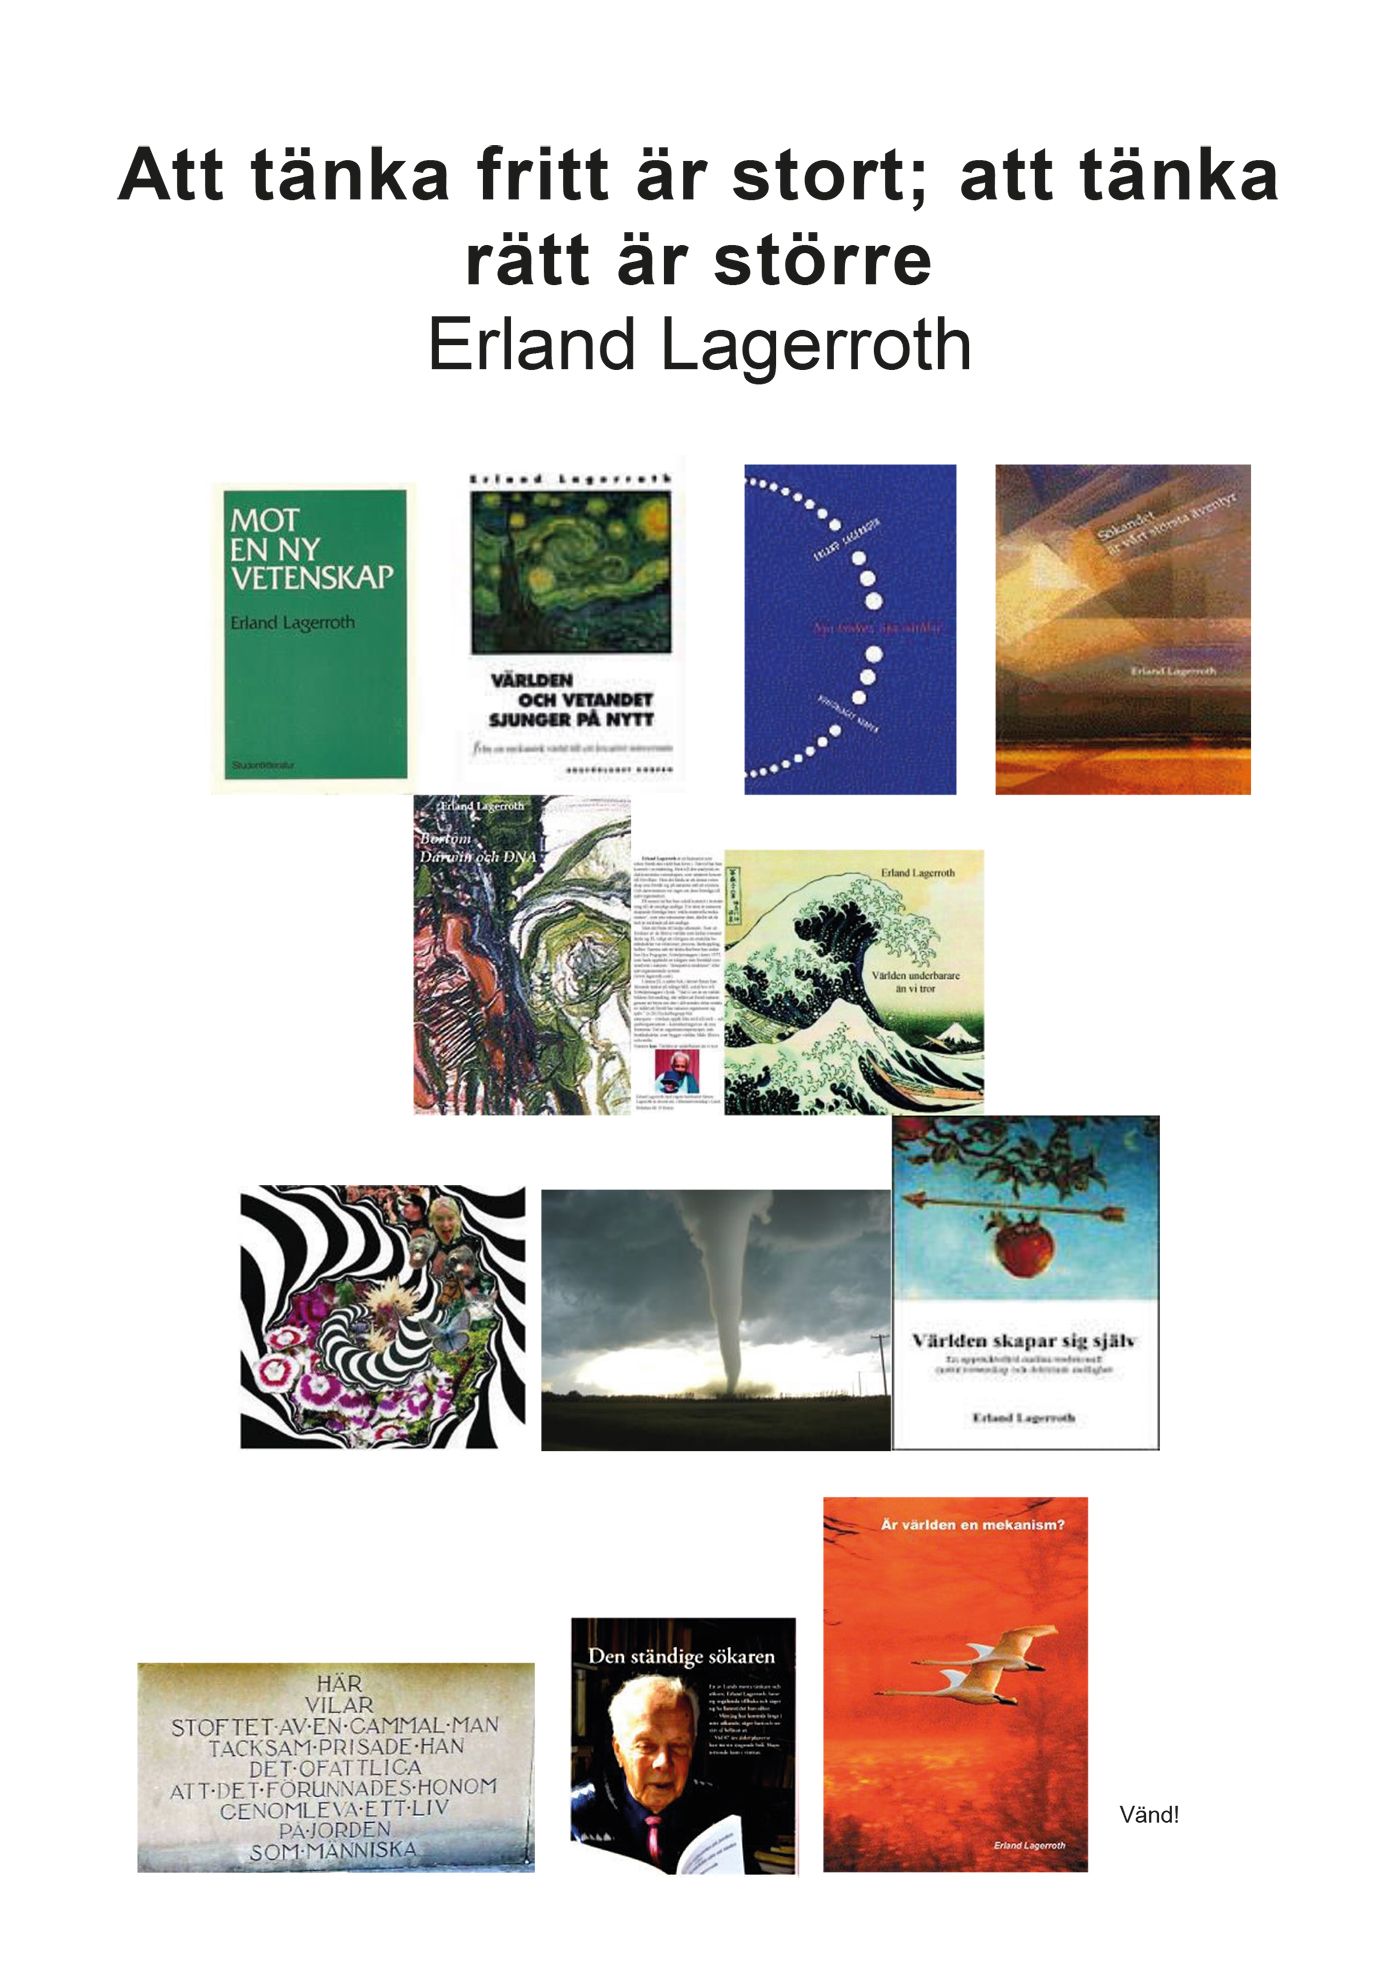 Att tänka fritt är stort; att tänka rätt är större, e-bog af Erland Lagerroth